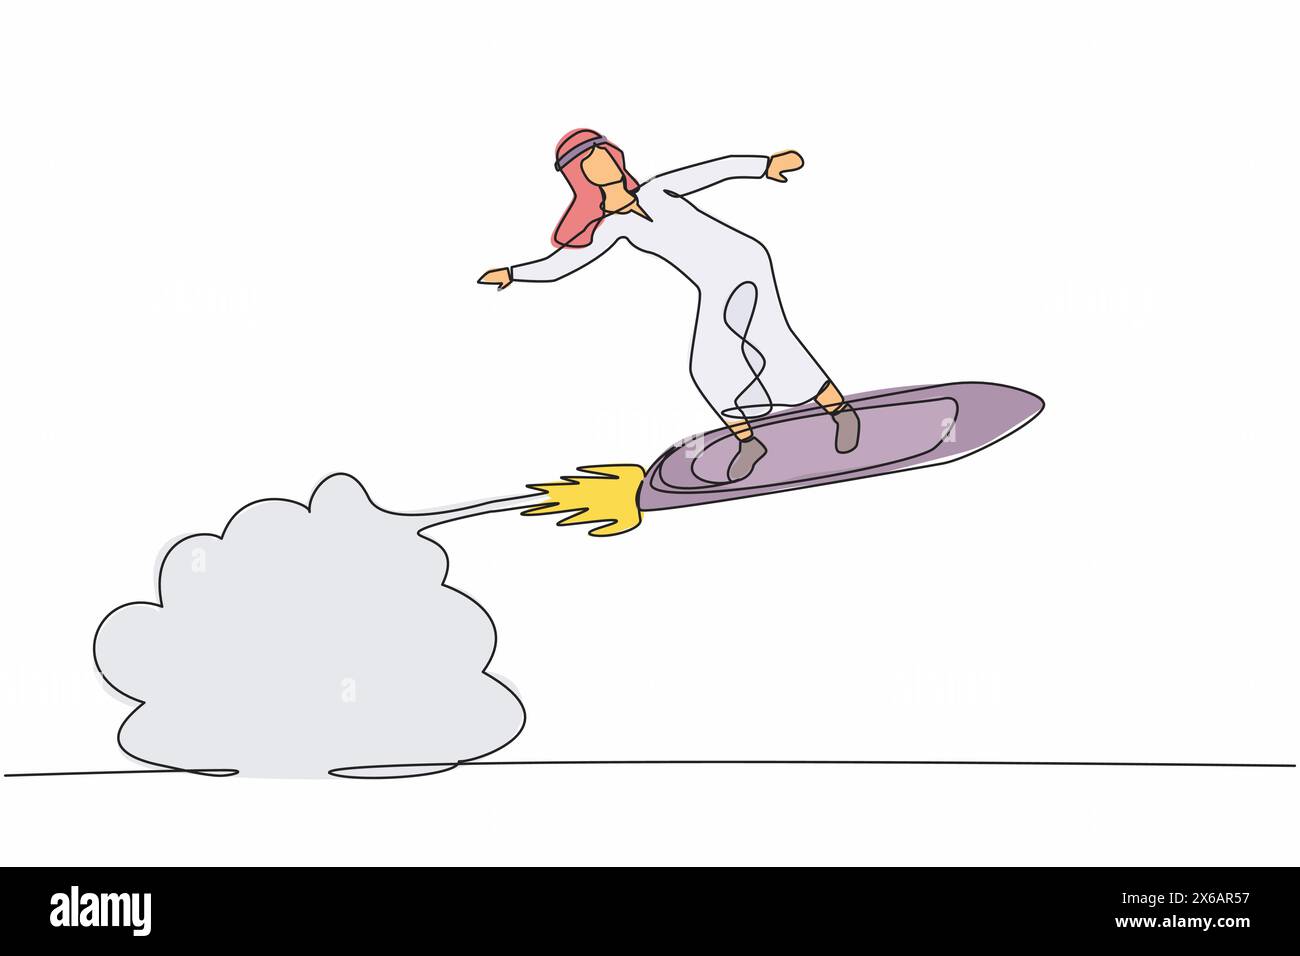 Eine einzige Linie zeichnet arabischer Geschäftsmann, der Surfbrett-Rakete reitet, die in den Himmel fliegt. Erfolgreicher Trader auf höchster Rentabilität. Geschäftserfolg Stock Vektor